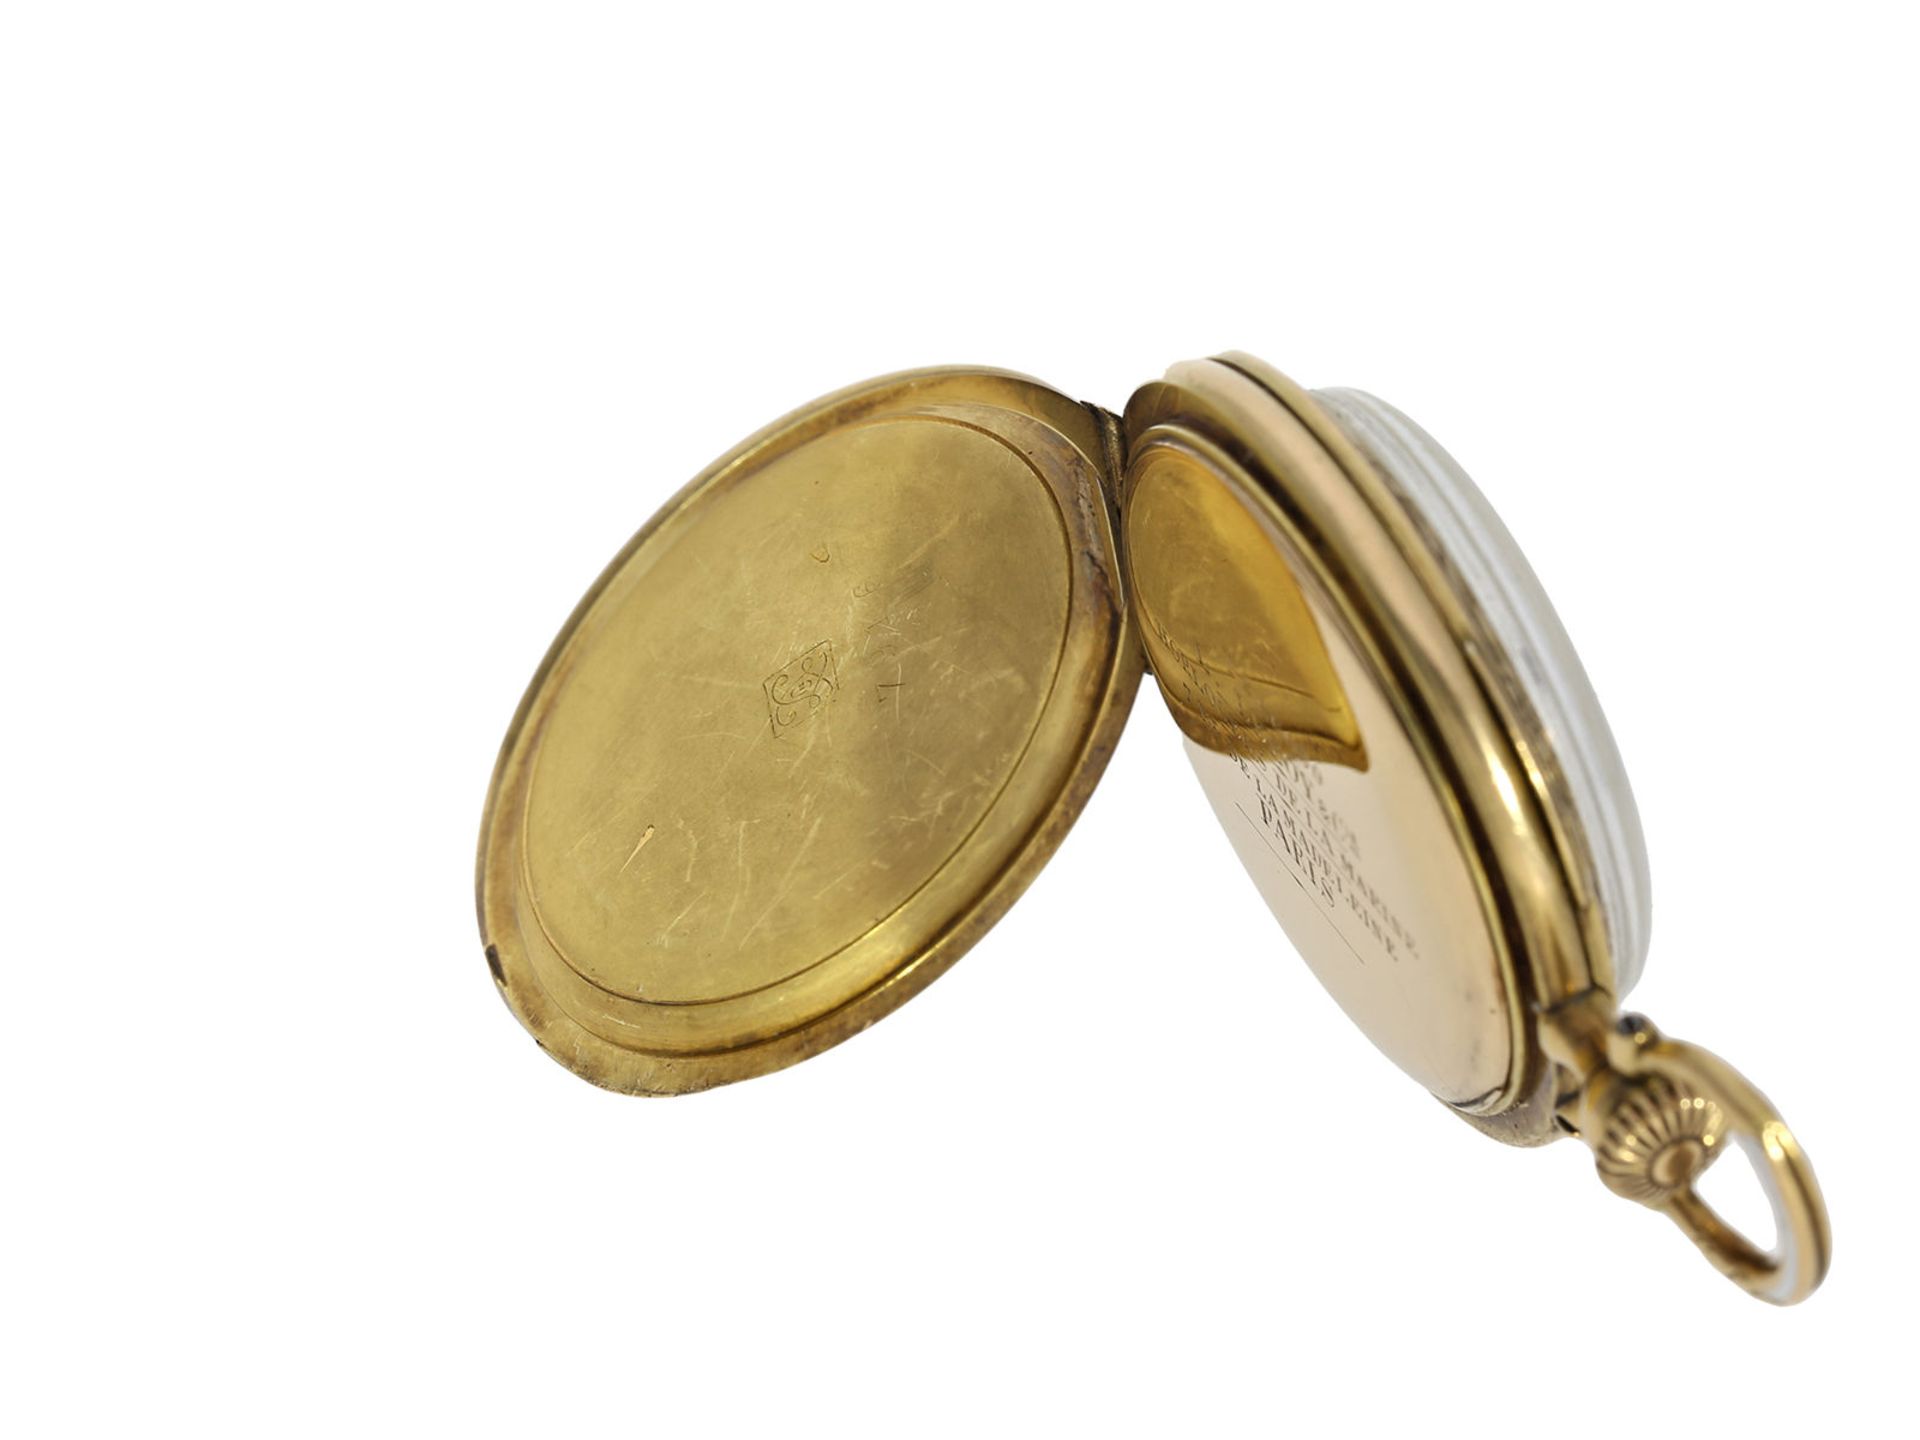 Taschenuhr/Anhängeuhr: ungewöhnliche Art Nouveau Gold/Emaille-Damenuhr hochfeiner Qualität, Leroy - Image 7 of 7